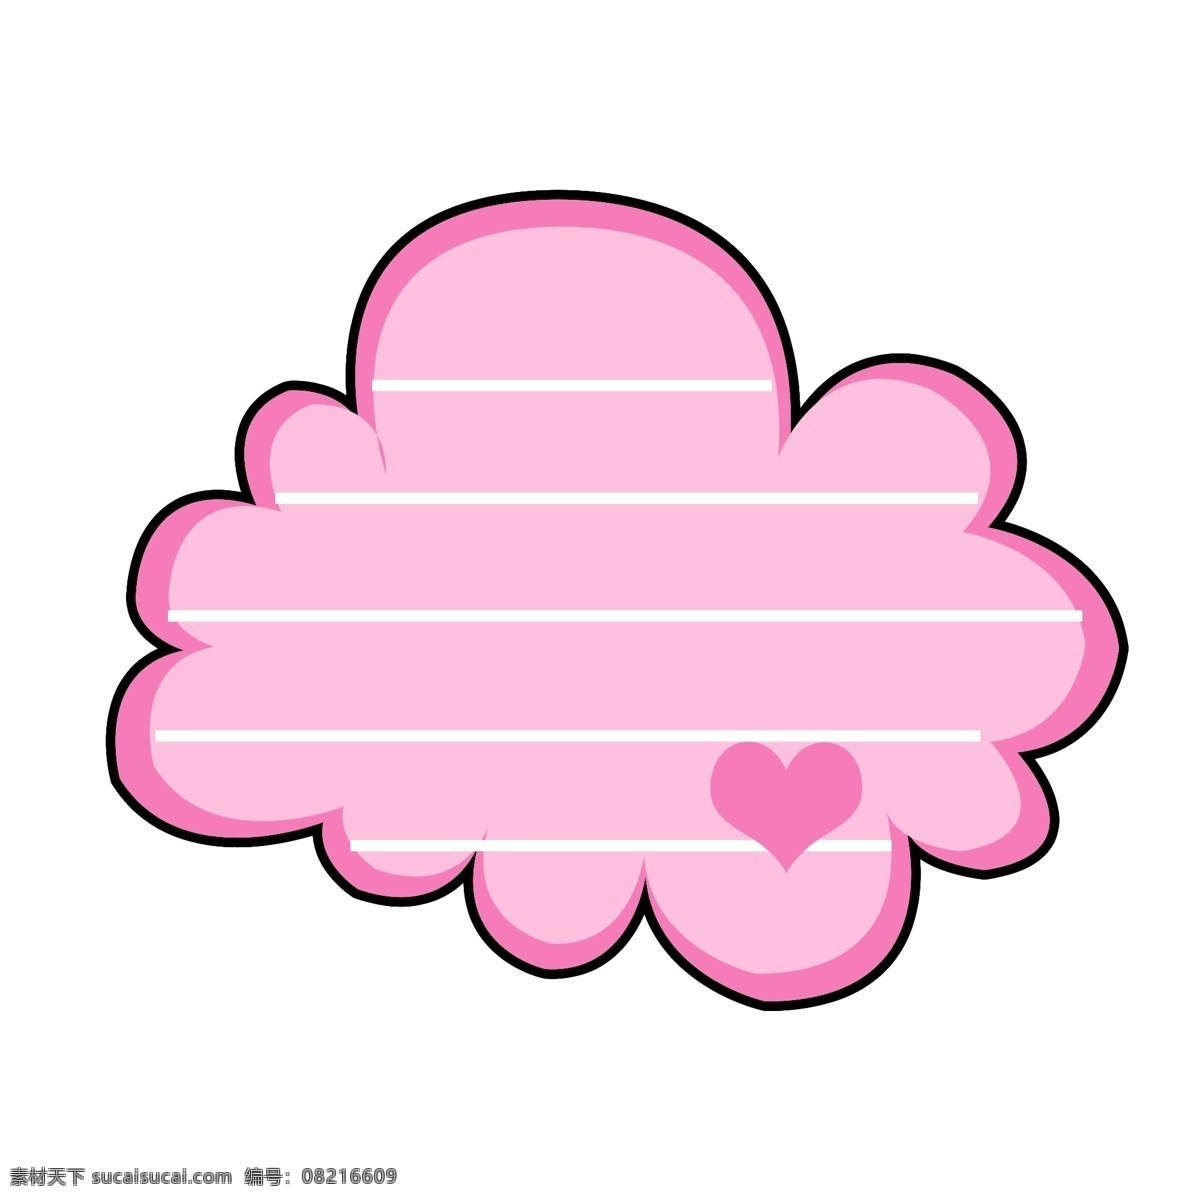 粉色 可爱 卡通 简约 创意 云朵 边框 手绘